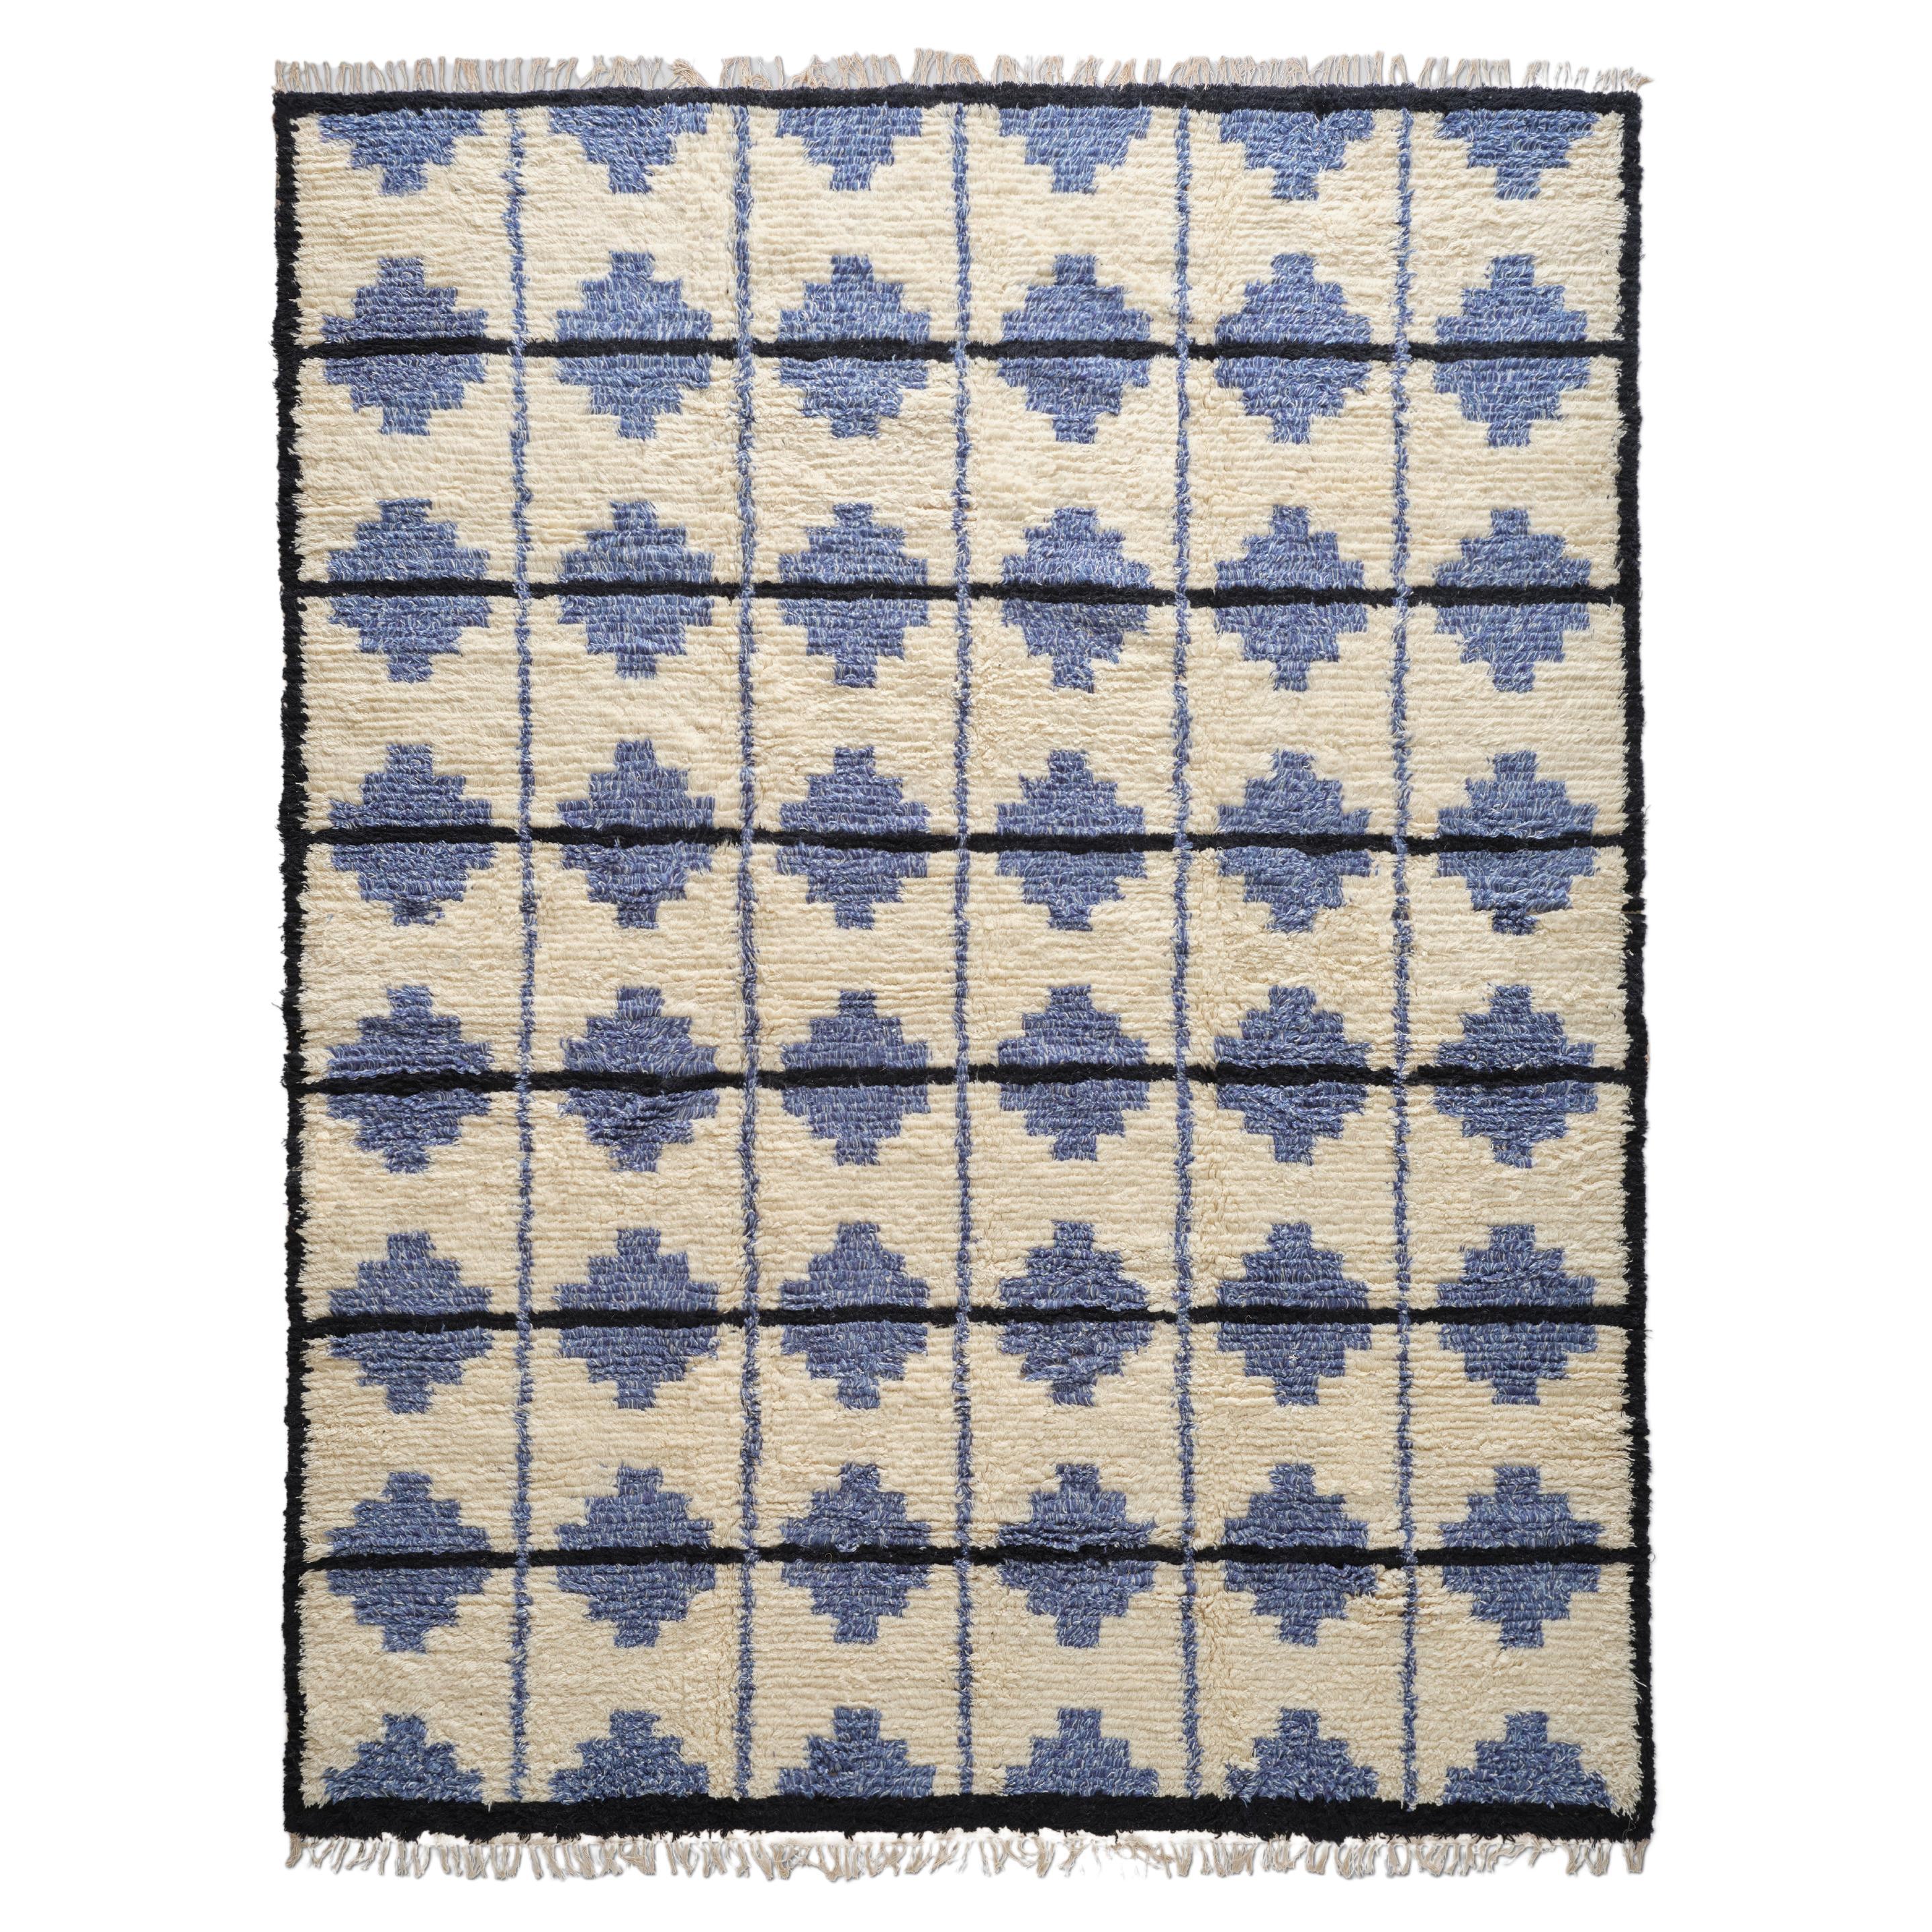 The Forsyth Shaggy Tile Rug - Blue and Cream, 8x10